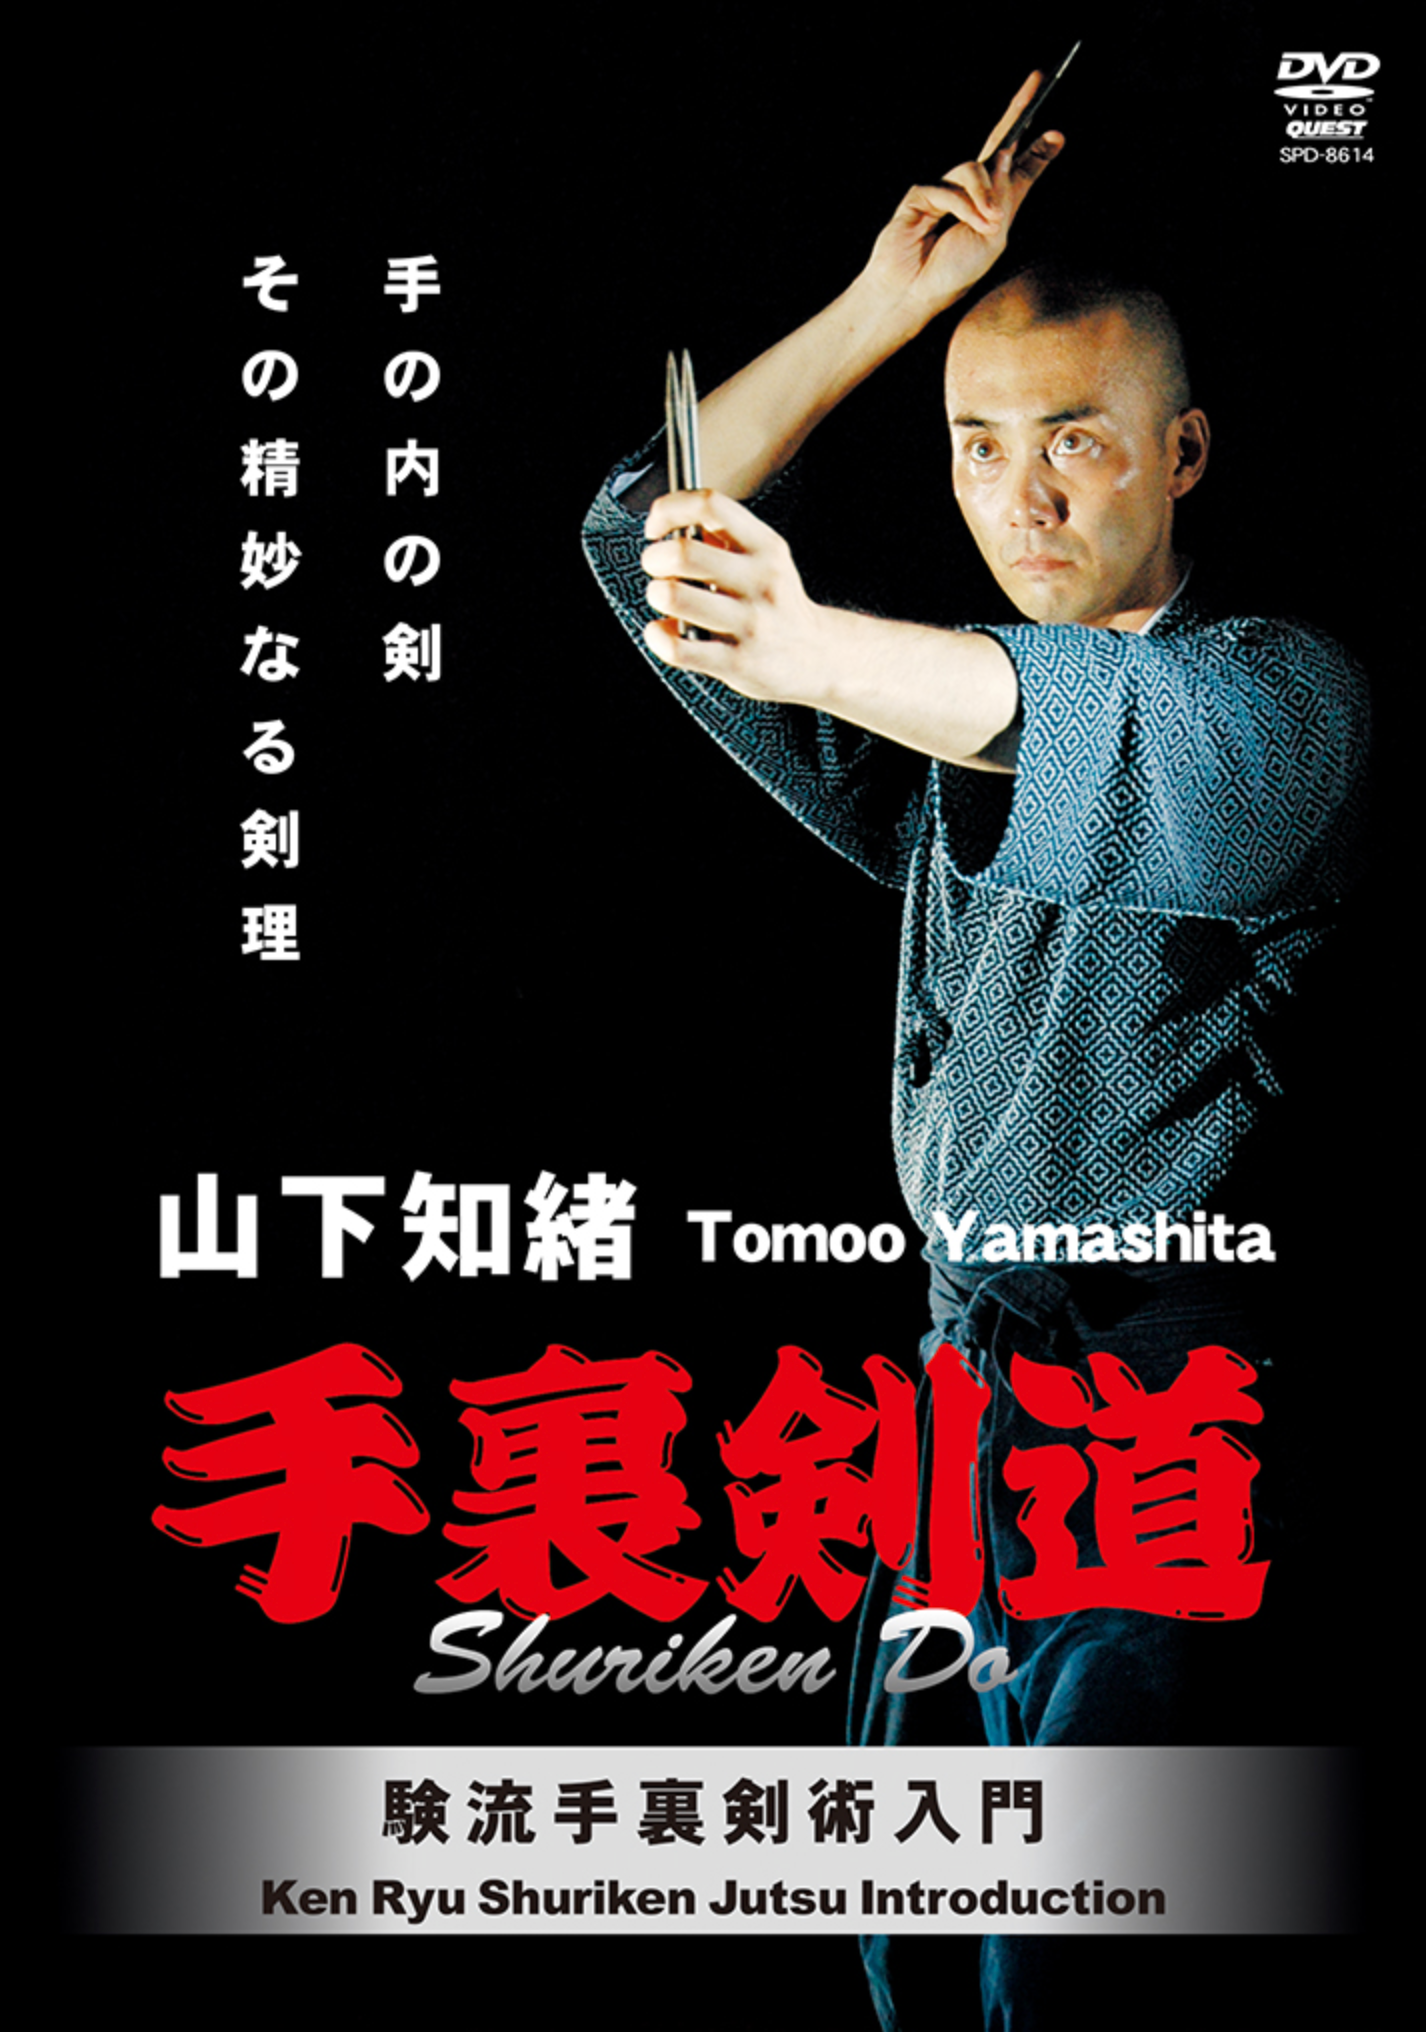 Shuriken-do DVD with Tomo Yamashita - Budovideos Inc